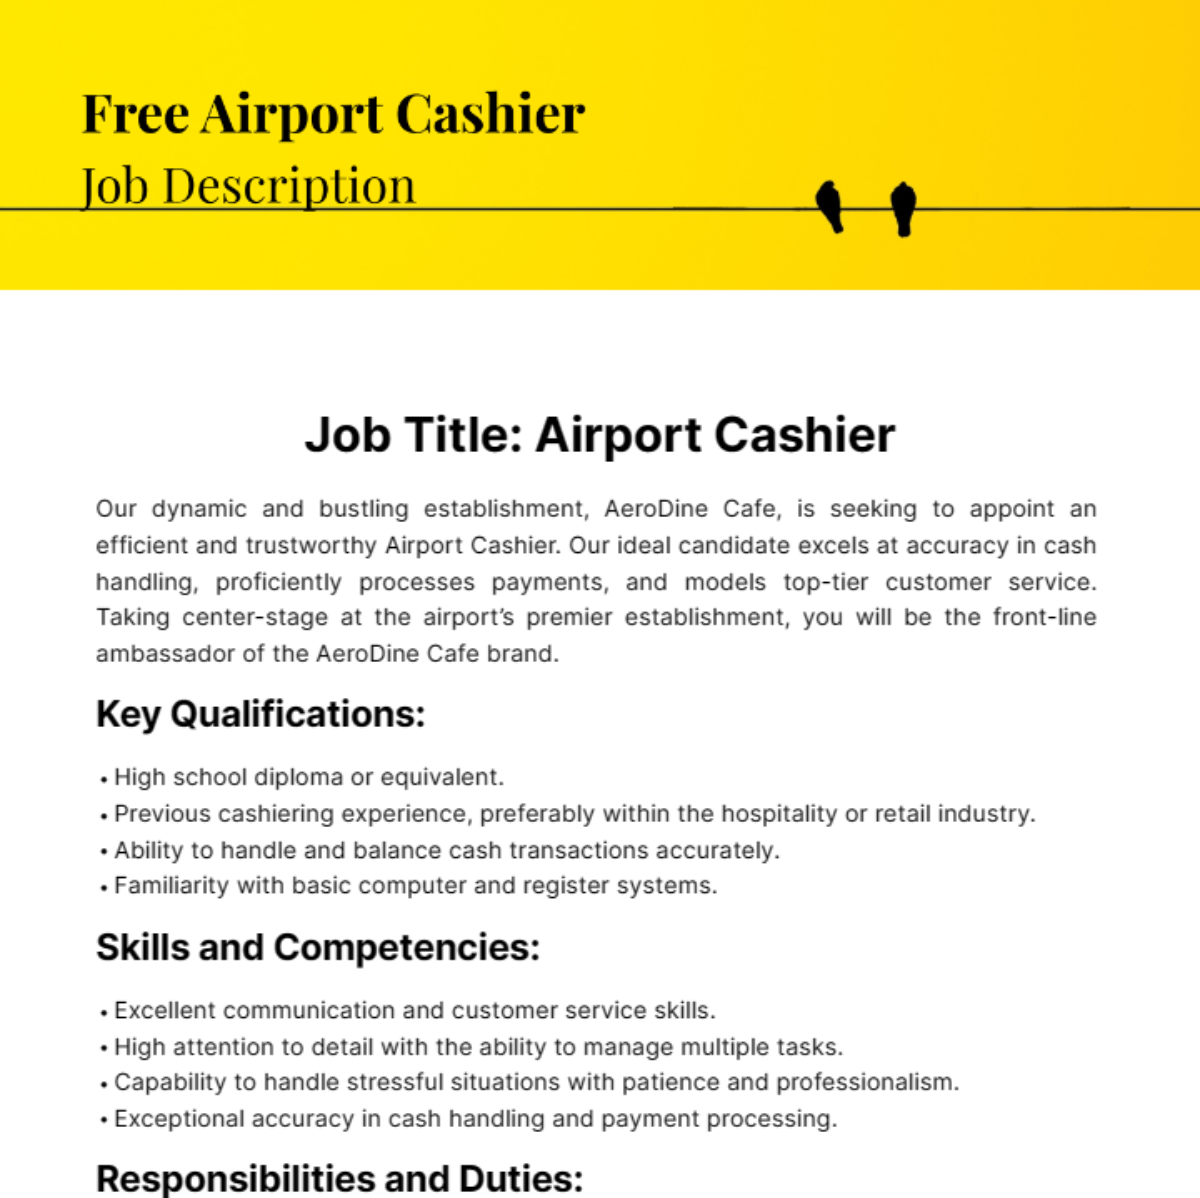 Free Airport Cashier Job Description Template